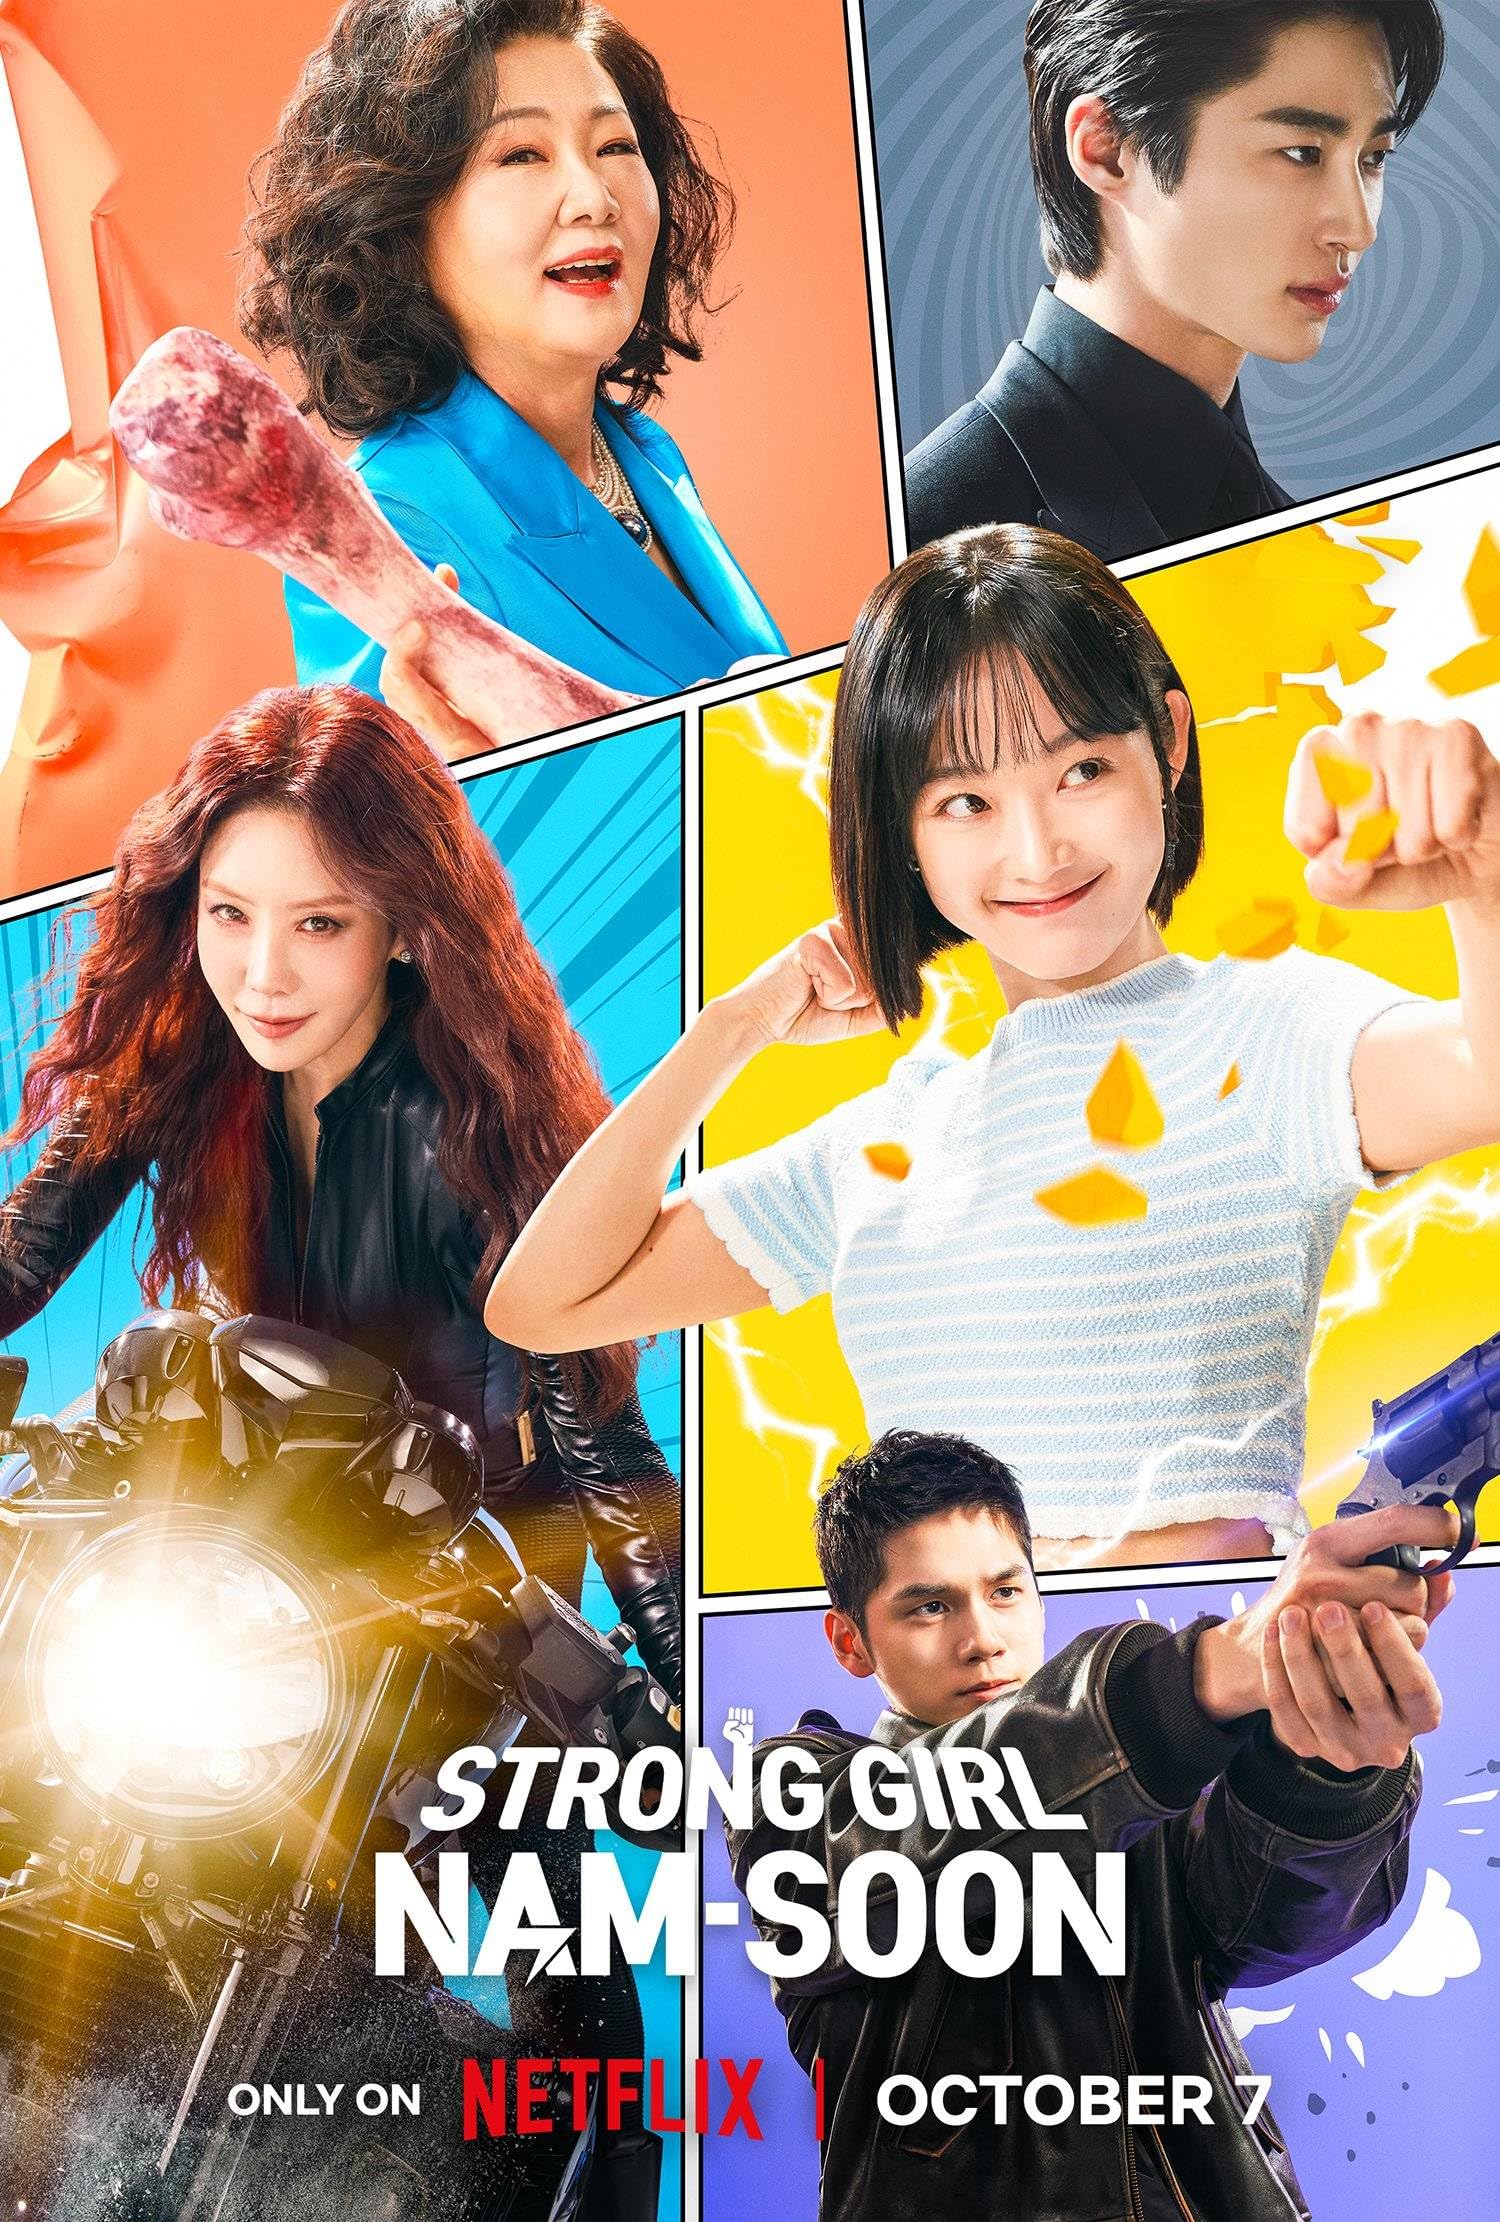 مسلسل الفتاة القوية نام سون Strong Girl Nam-soon الحلقة 13 مترجمة